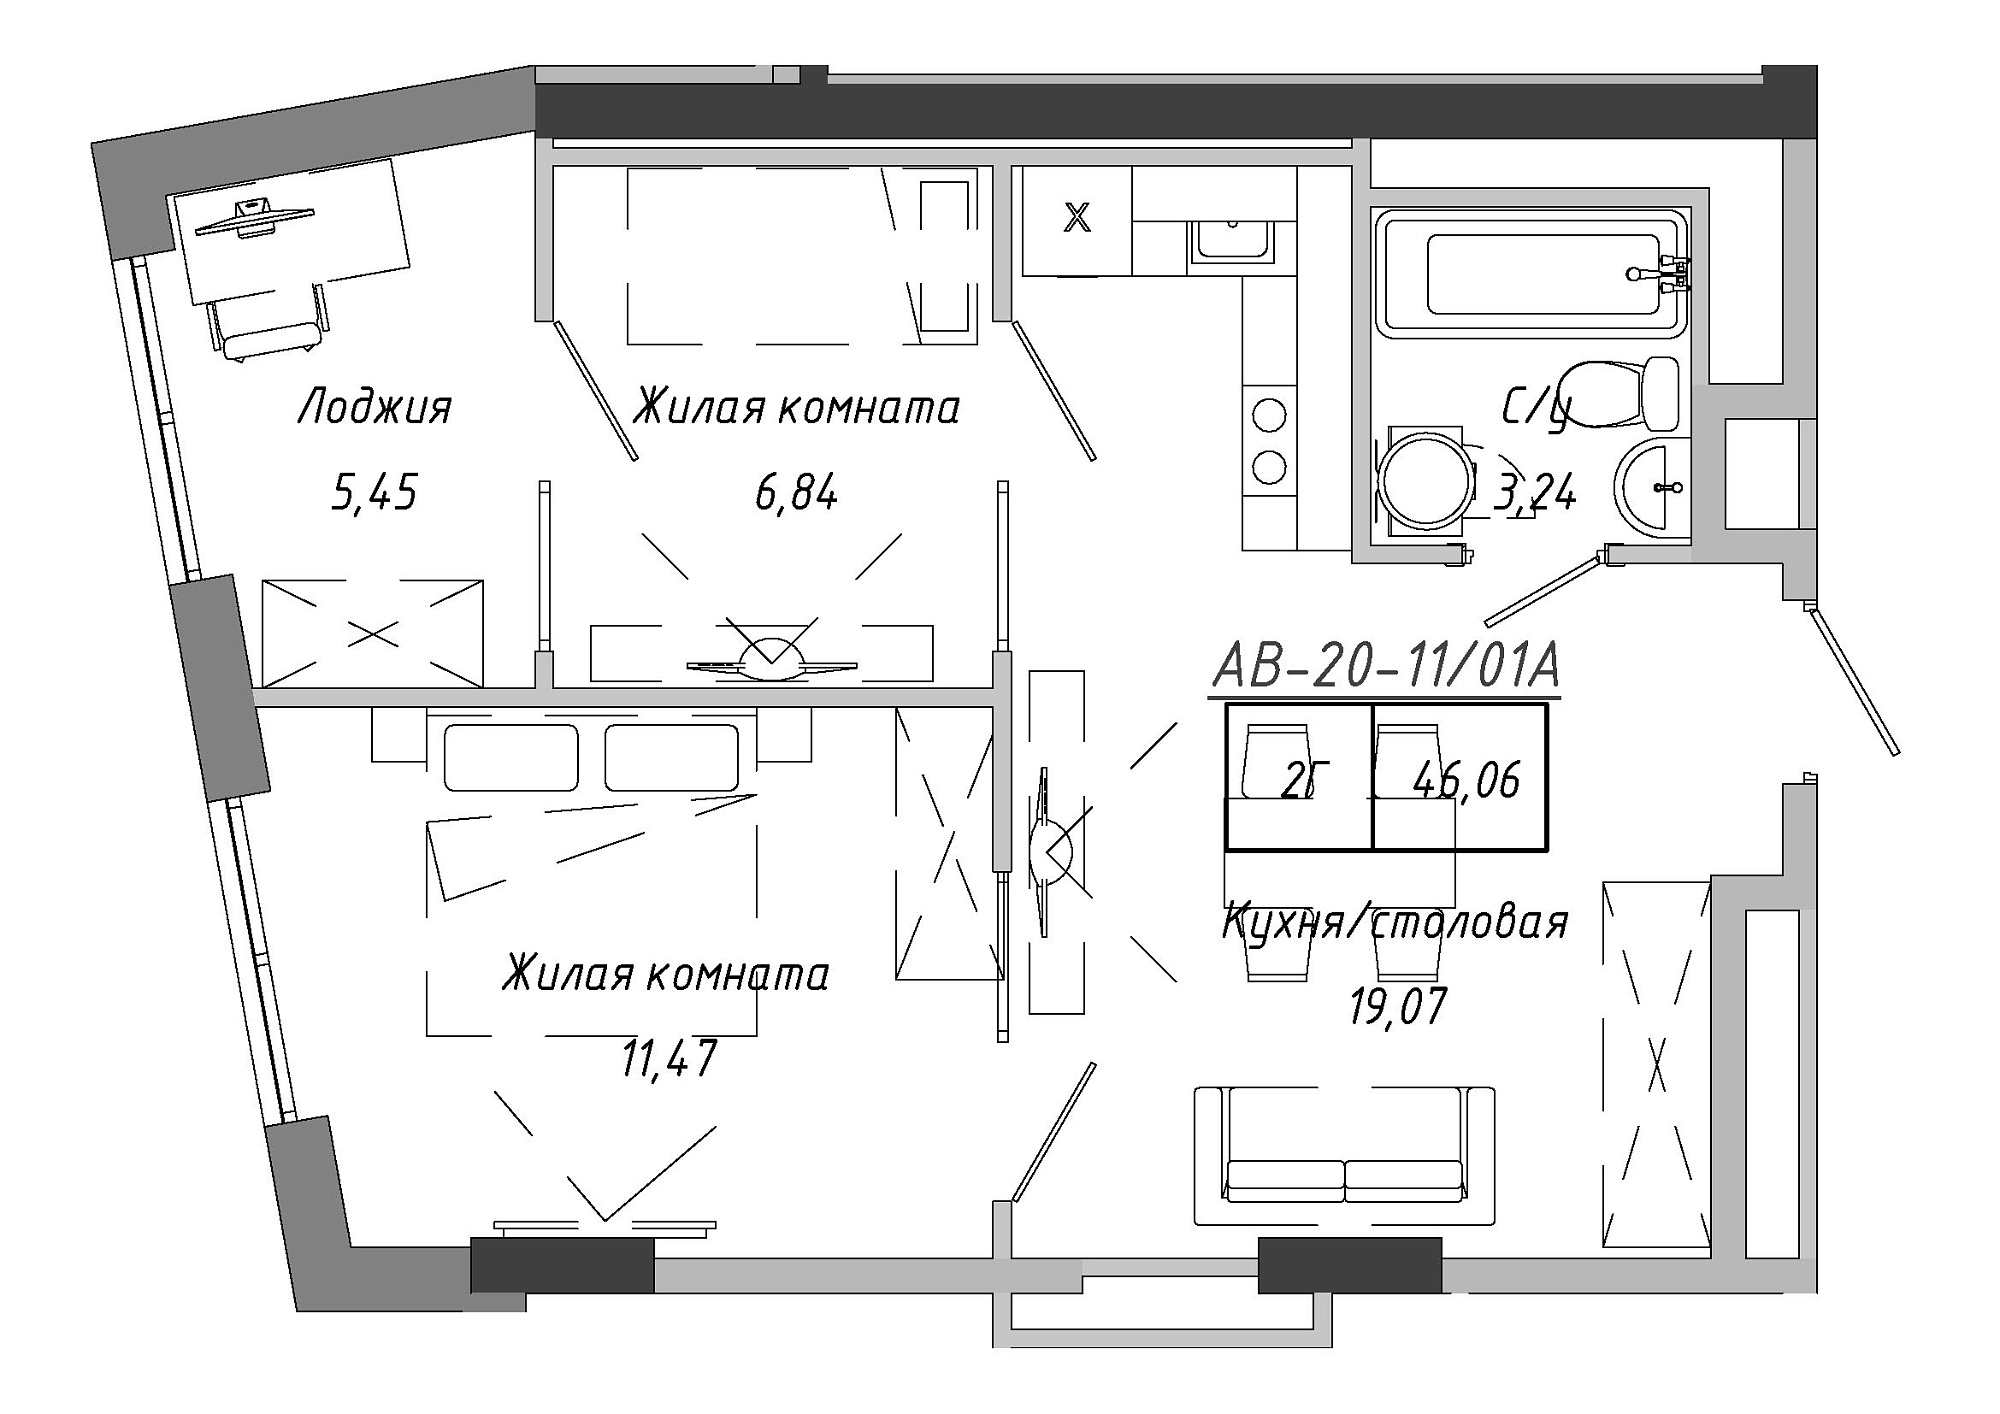 Планировка 2-к квартира площей 45.99м2, AB-20-11/0001а.